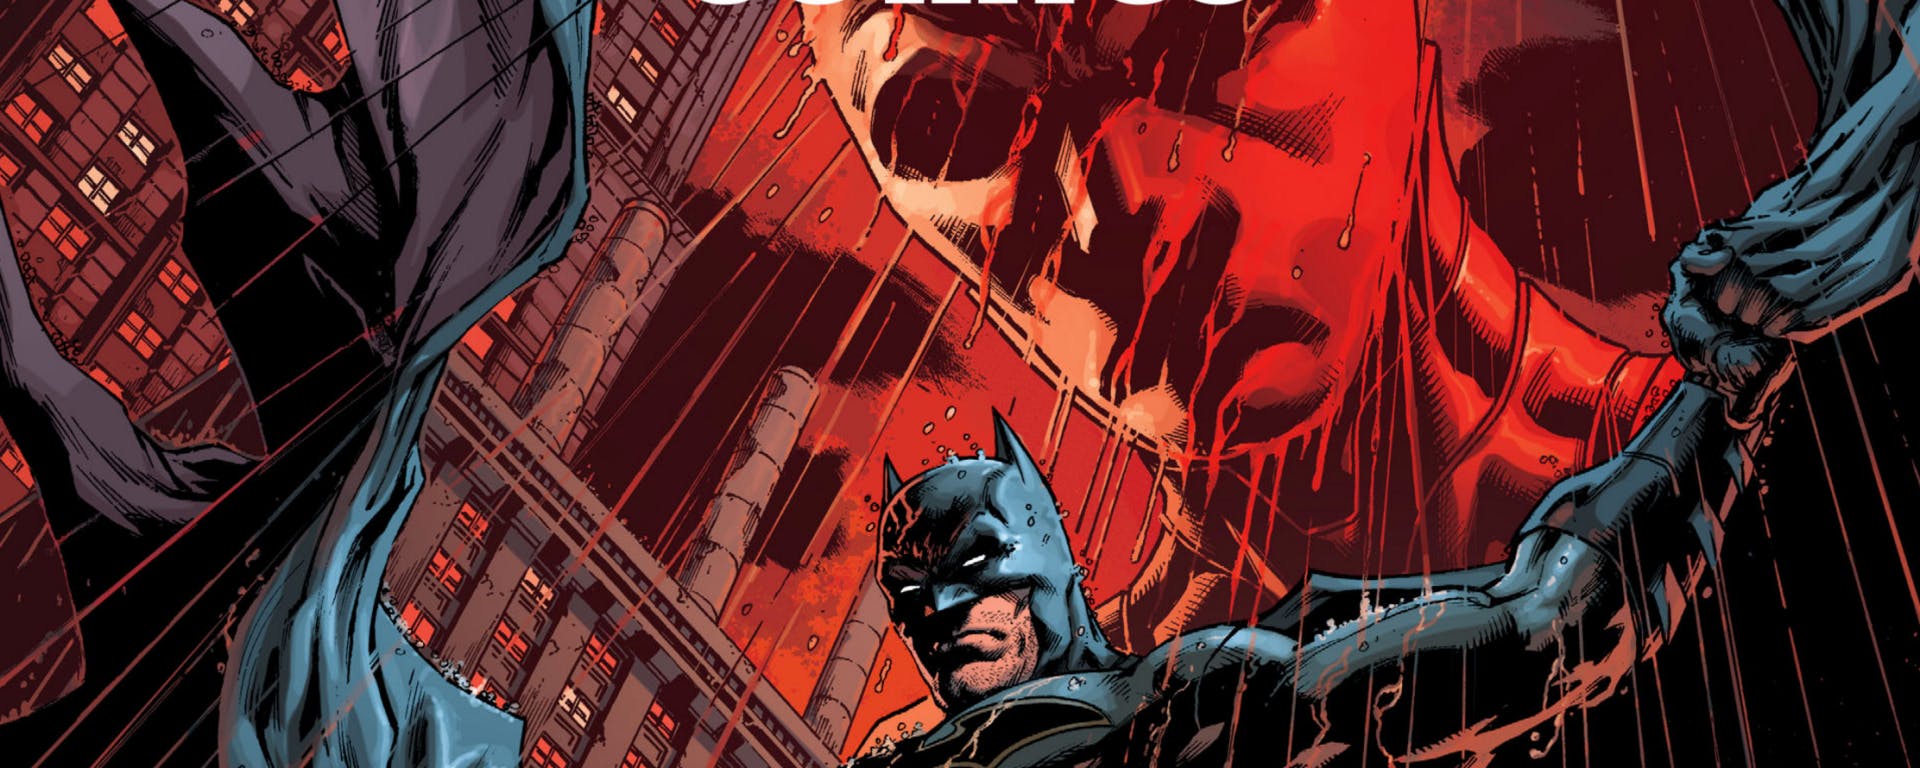 10 Villanos de Gotham que nos gustaría ver en el programa de televisión de Batwoman 3